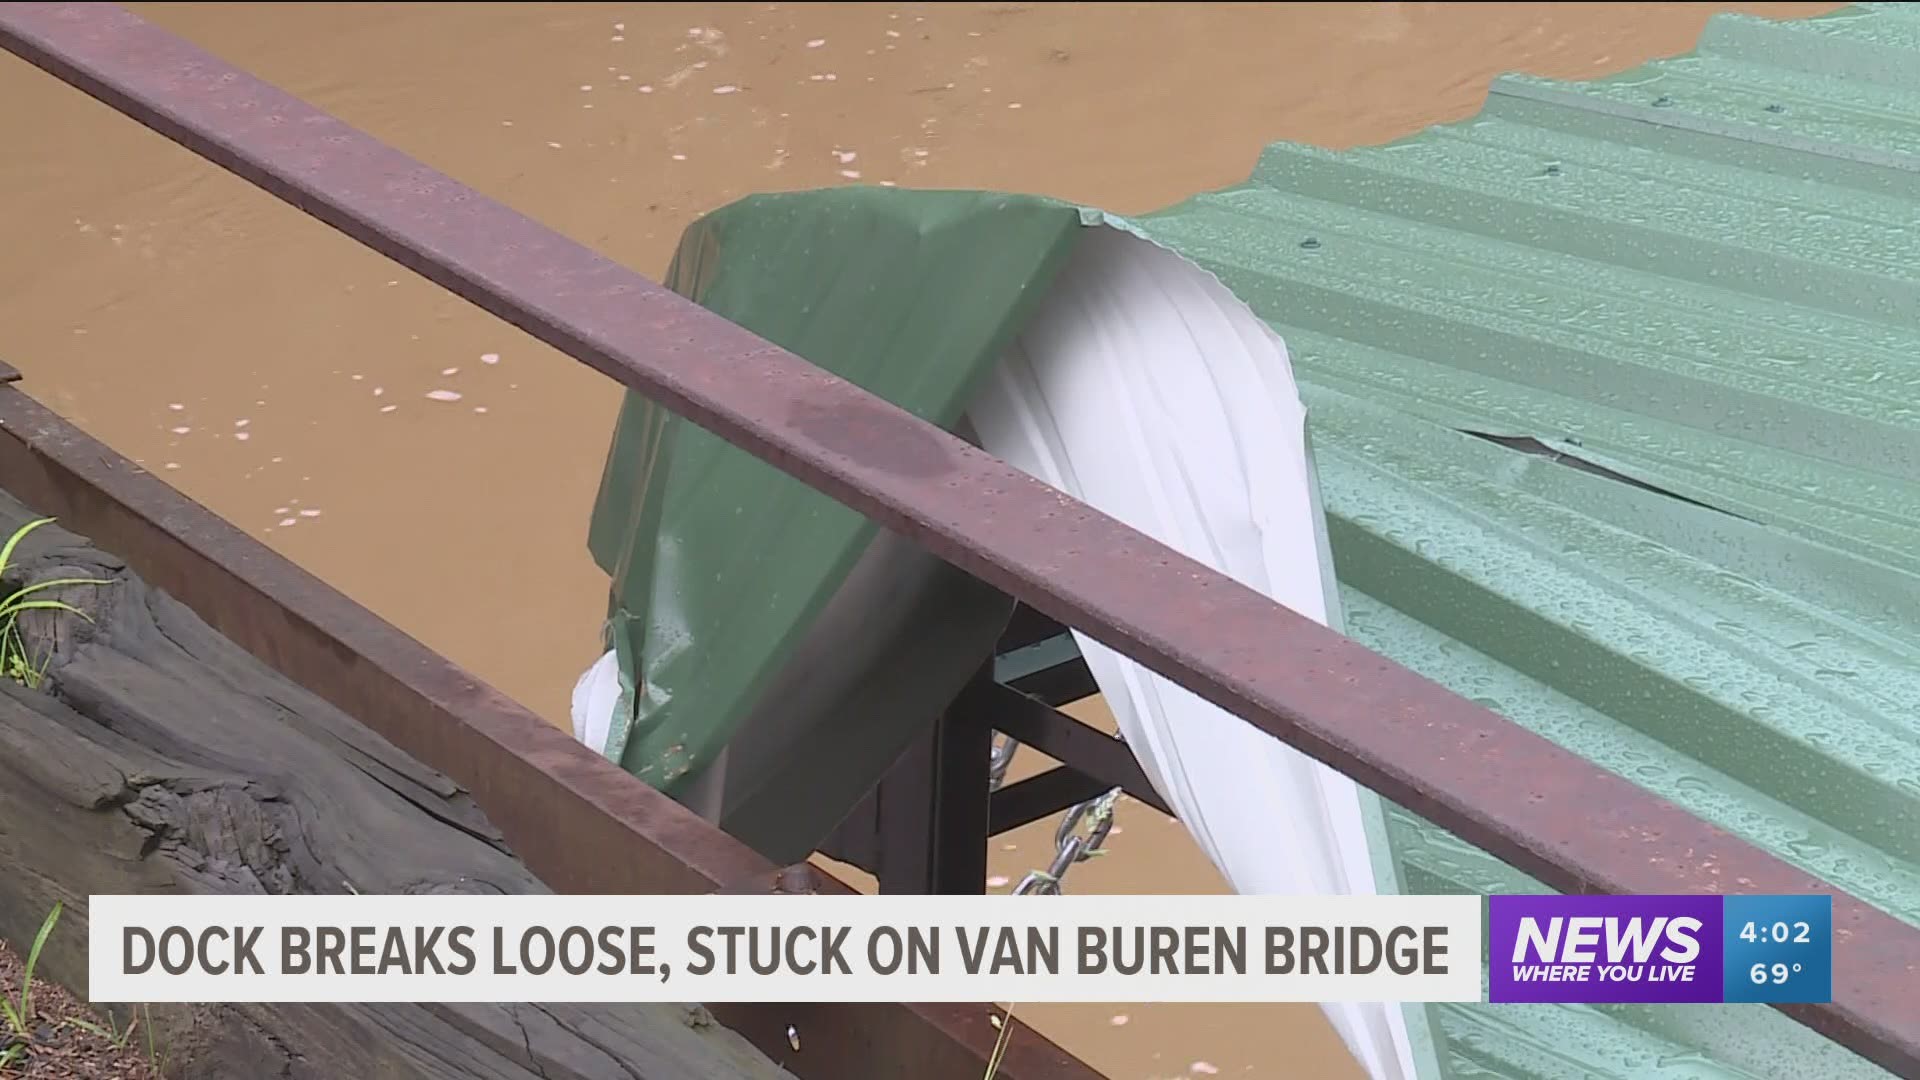 Dock breaks loose and gets stuck on Van Buren bridge